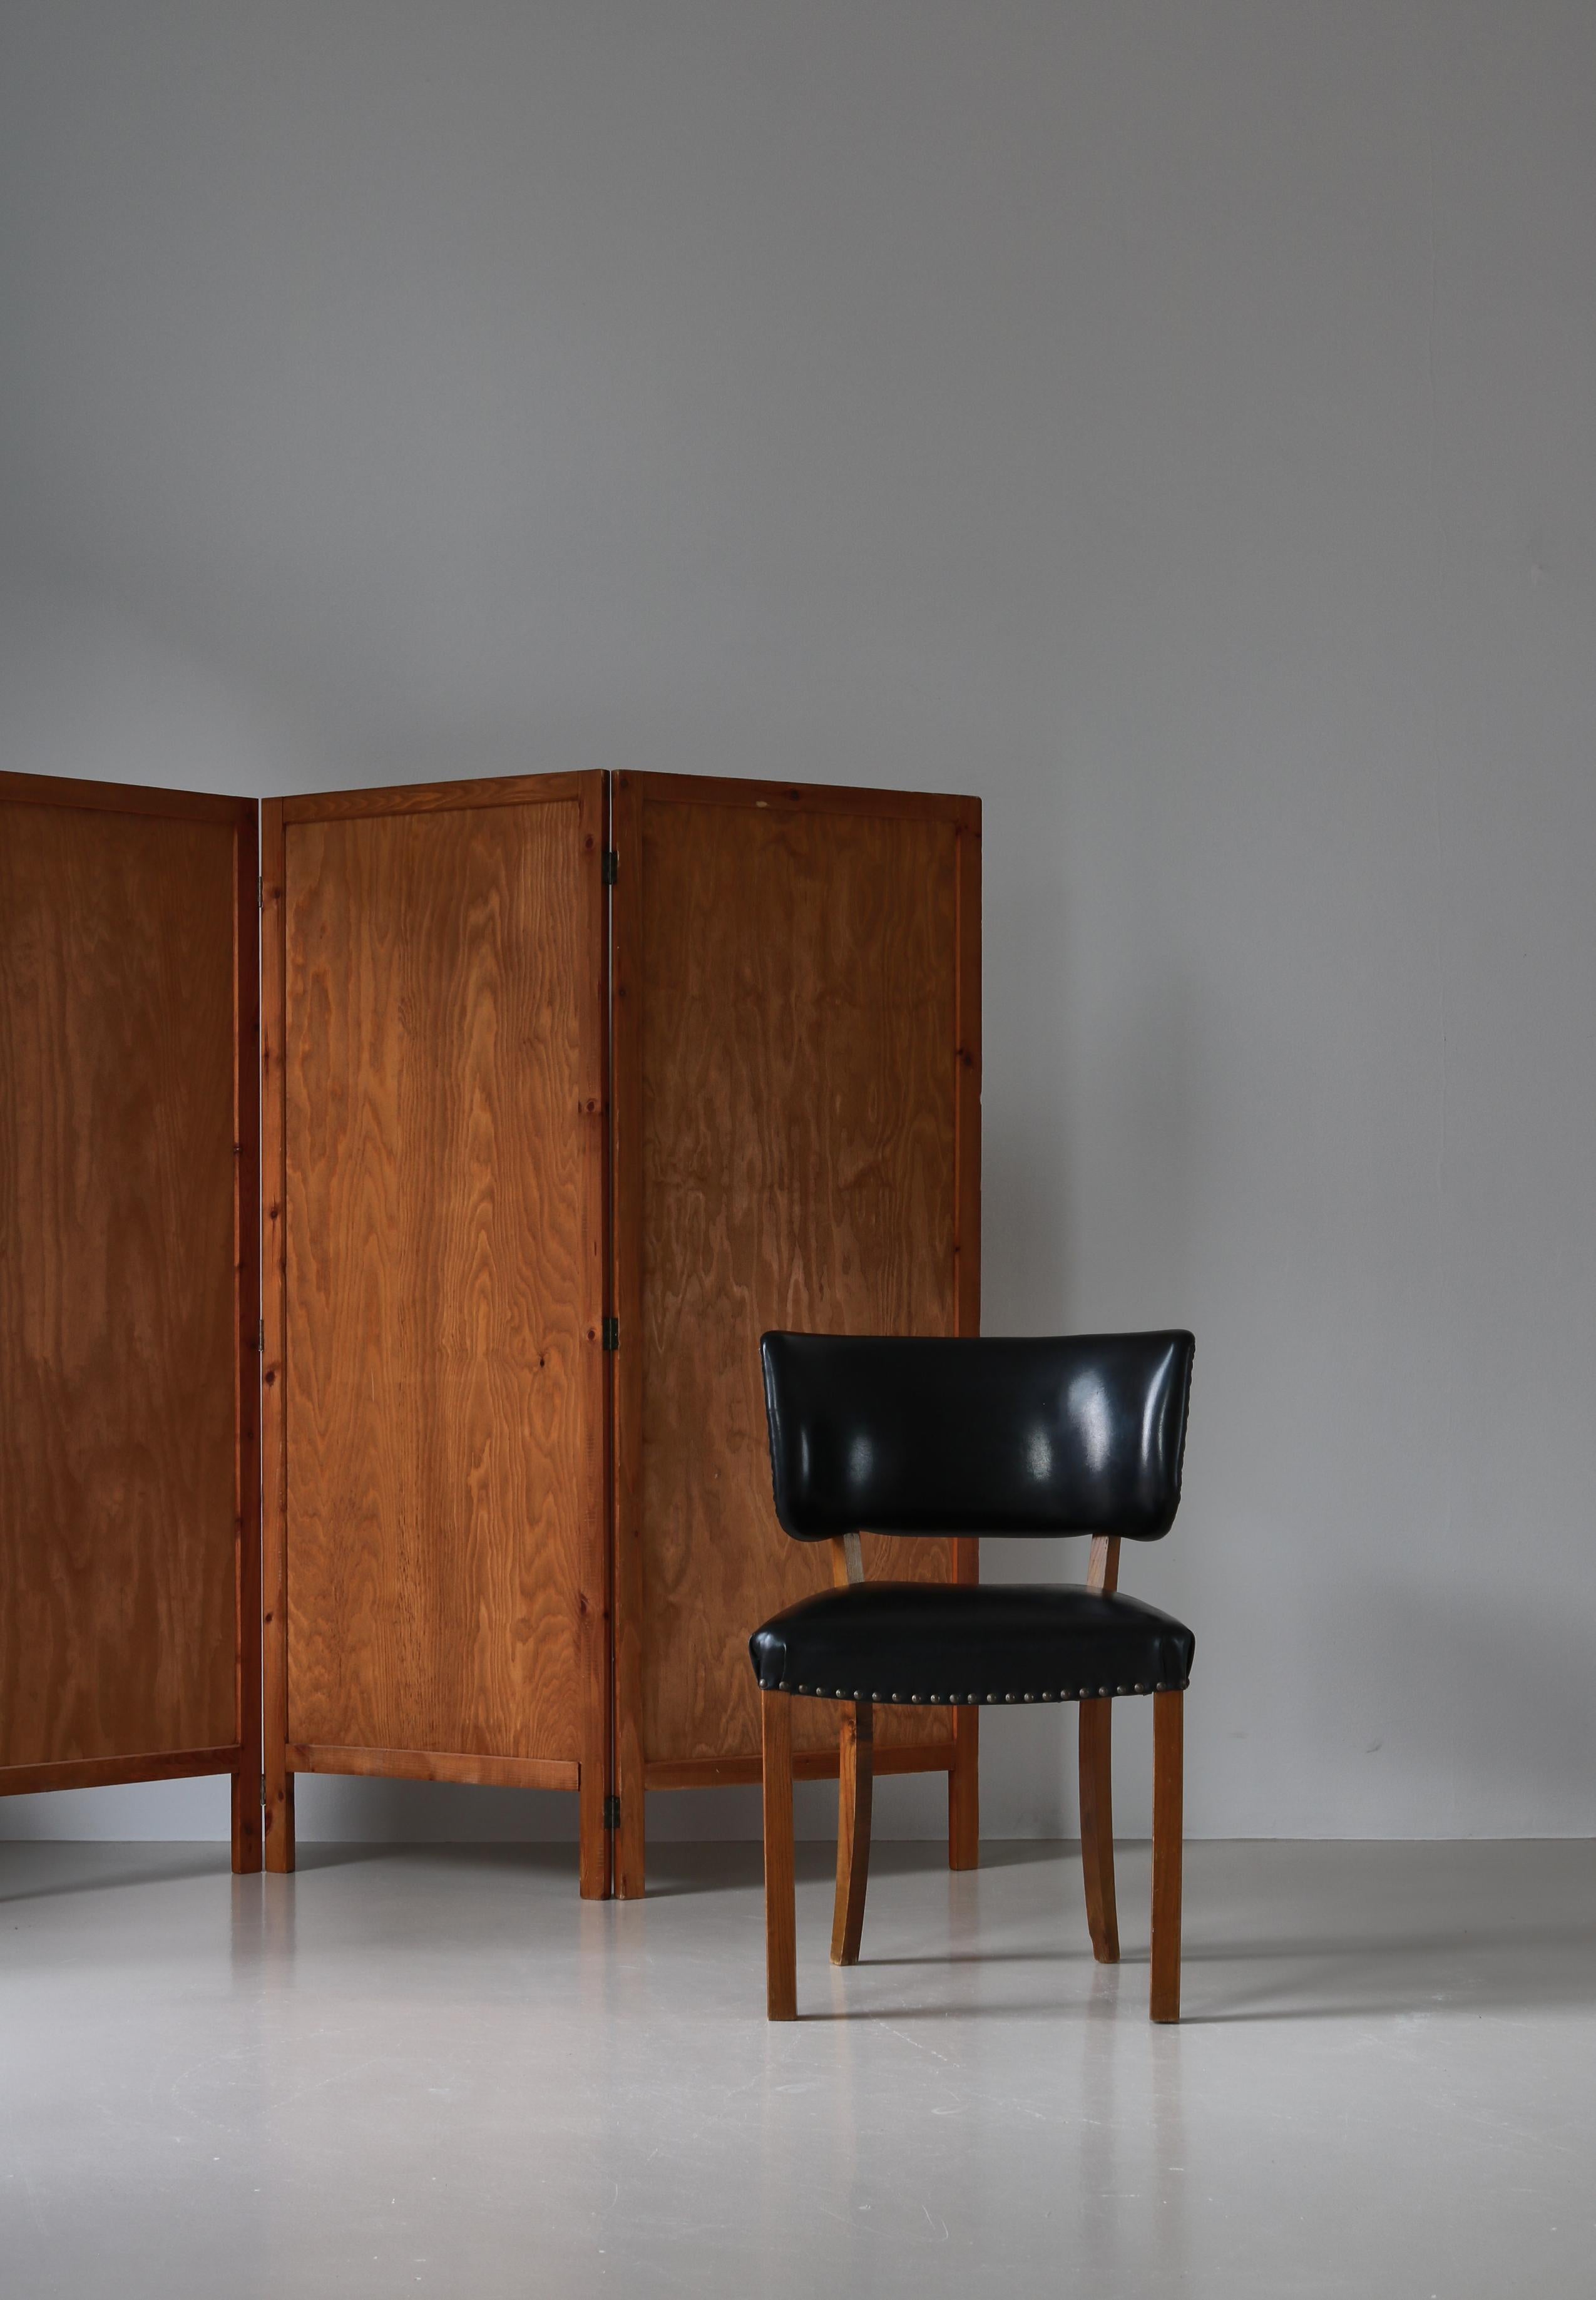 Ein Satz dänischer moderner Beistellstühle aus den 1940er Jahren, die dem dänischen Architekten Magnus Stephensen zugeschrieben werden. Ausgeführt in massivem Ulmenholz und schwarzem Kunstleder. Große Stühle mit wunderbaren organischen Kurven.

Sehr